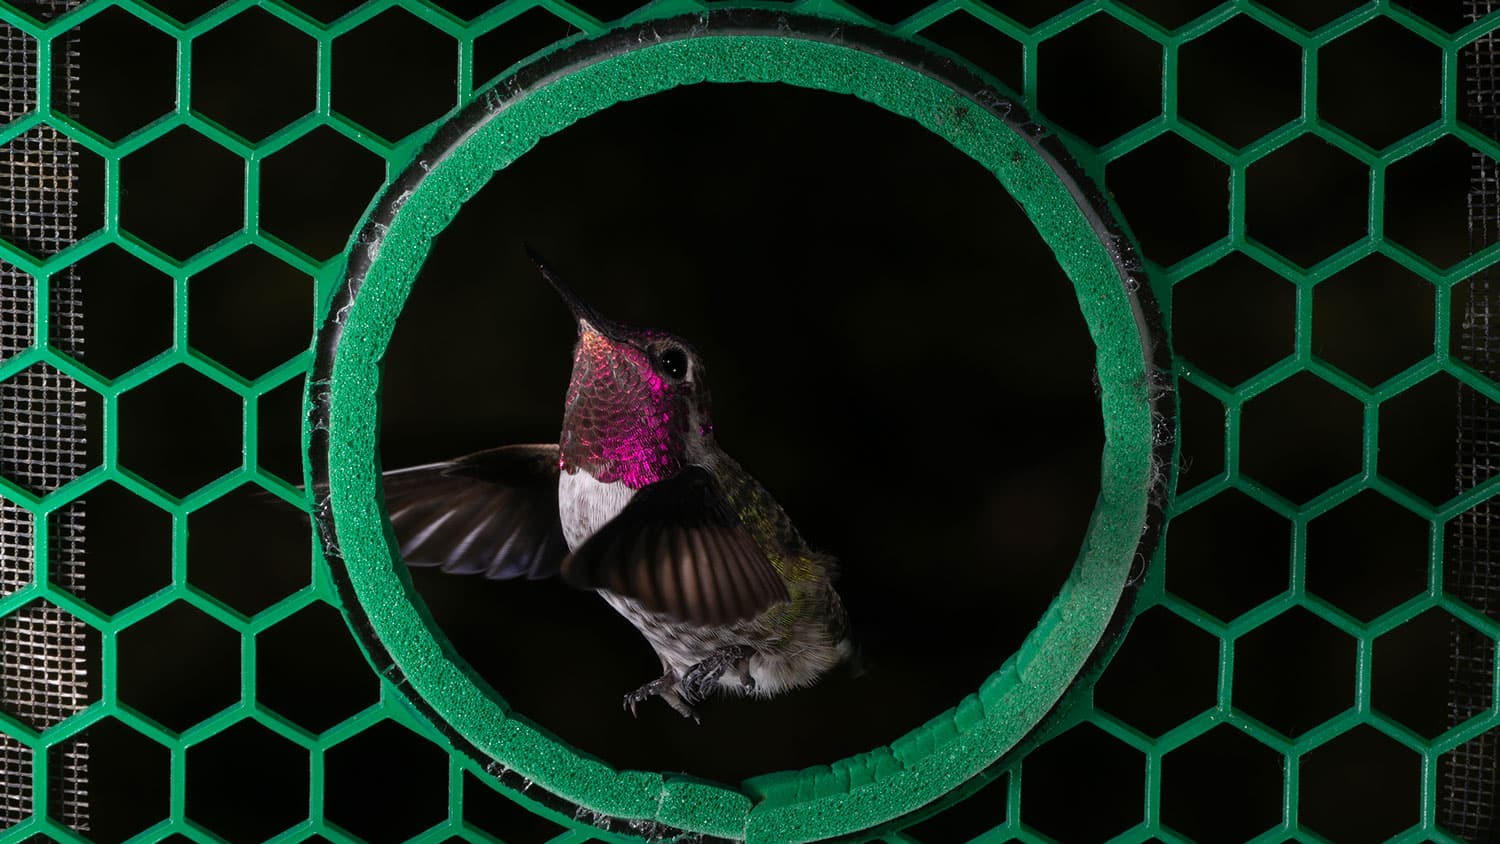 An Anna's hummingbird